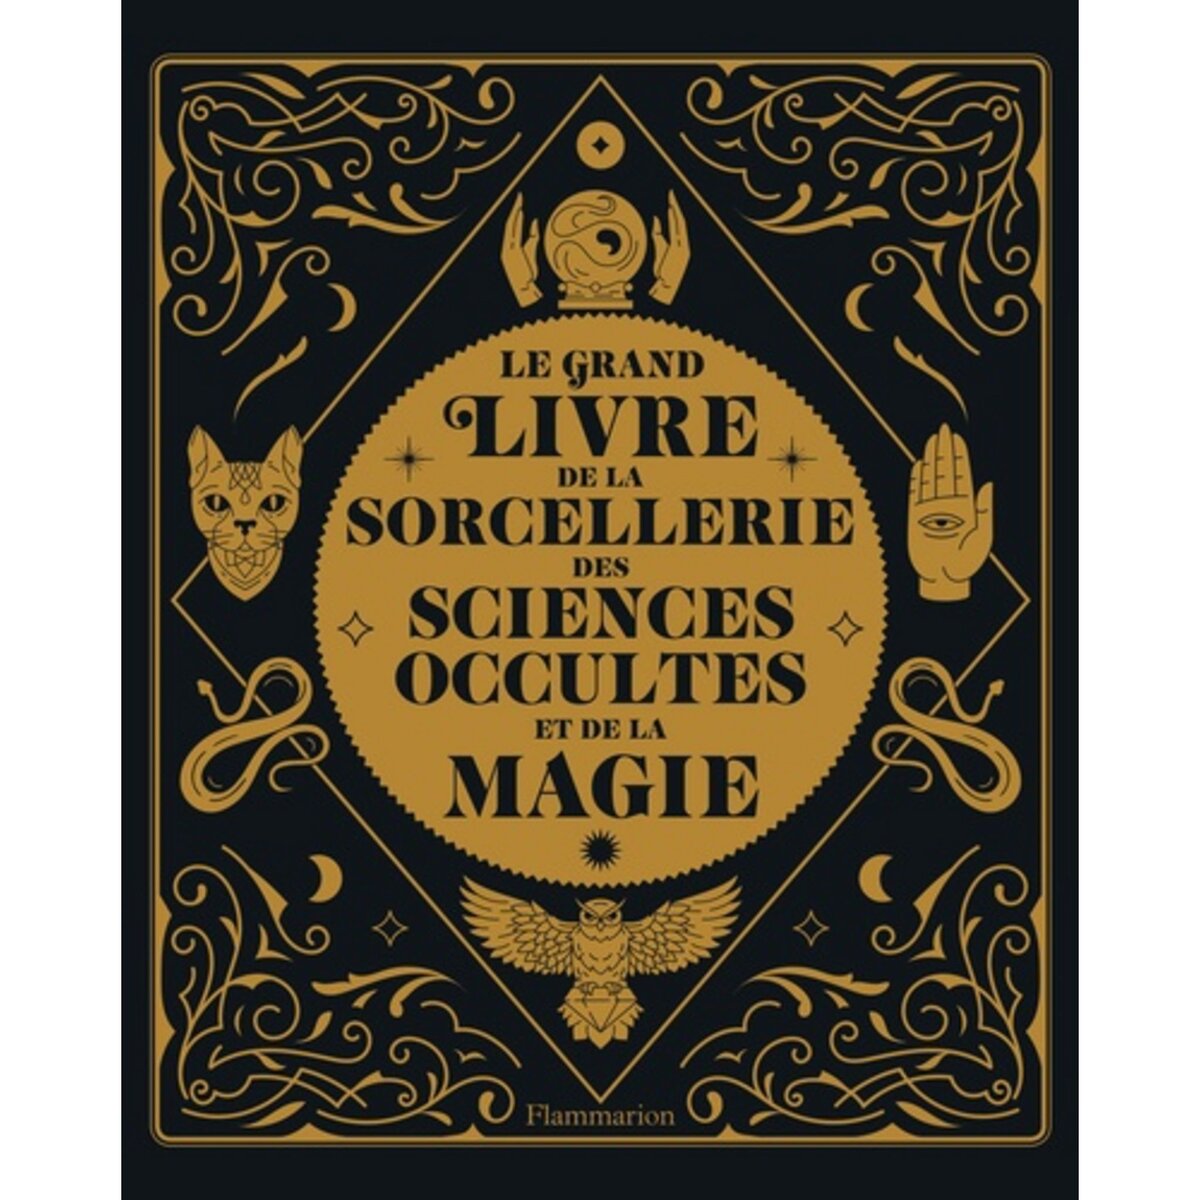 Le grand Magic Answers book - Le livre qui répond à toutes tes